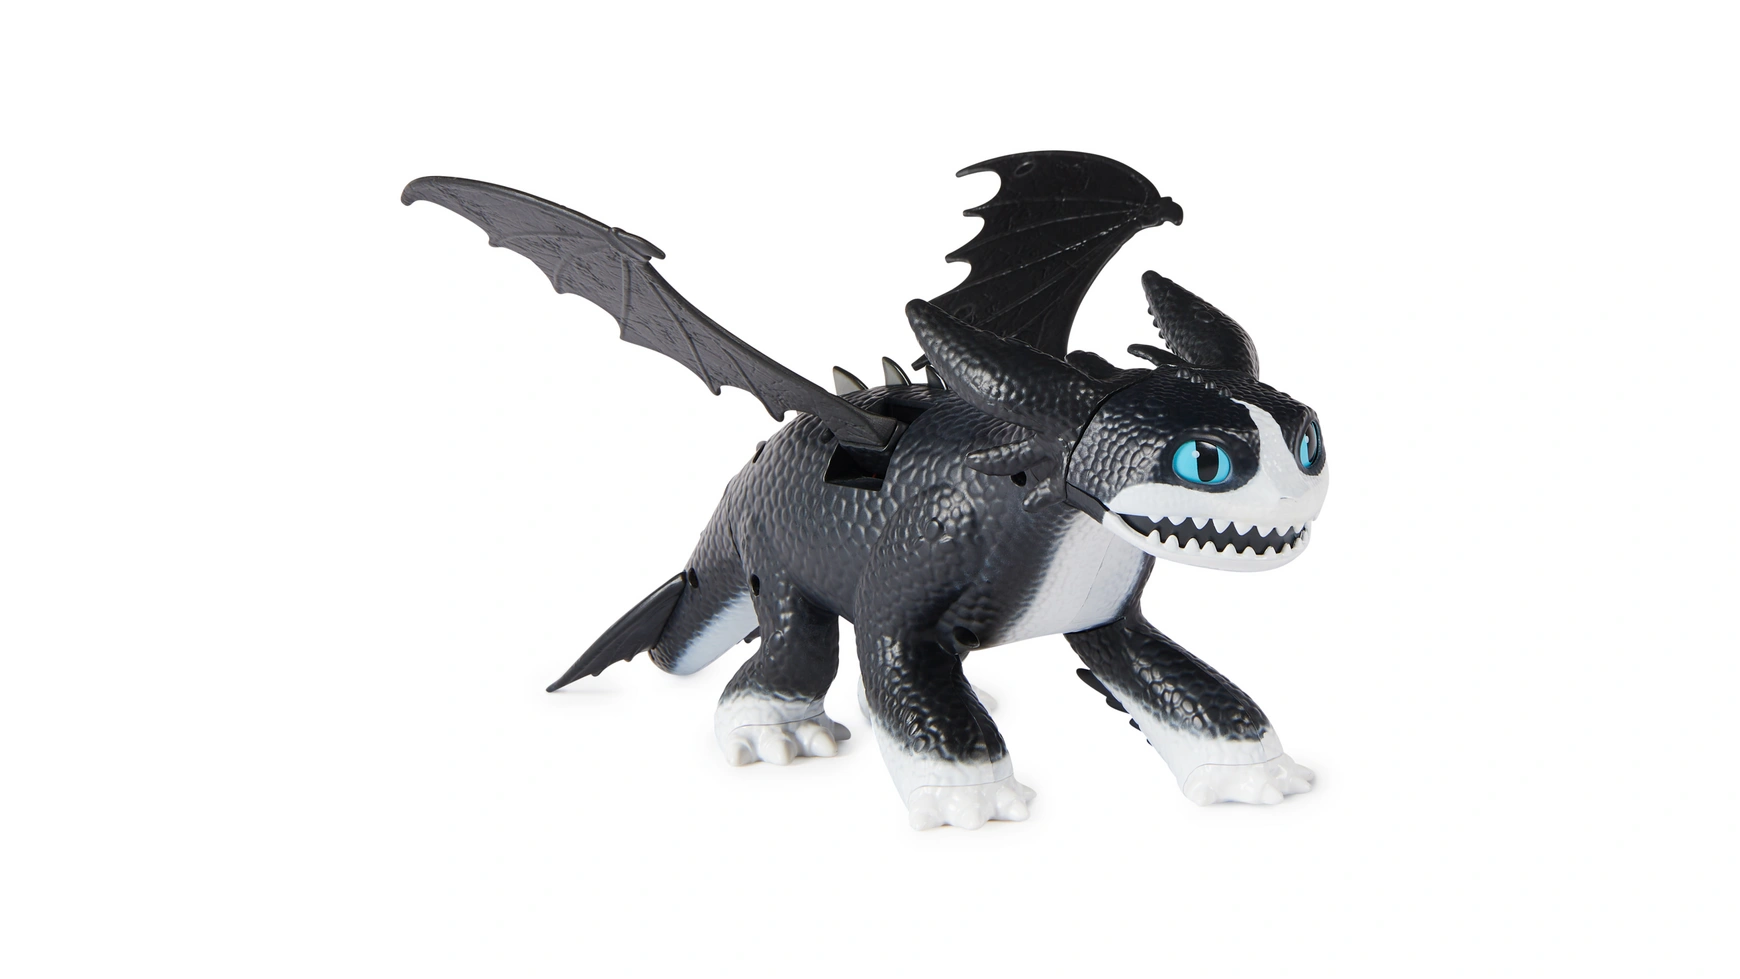 игрушка паровоз с со звуками и световыми эффектами Spin Master DreamWorks Dragons Fire and Flight, фигура грома 12 дюймов